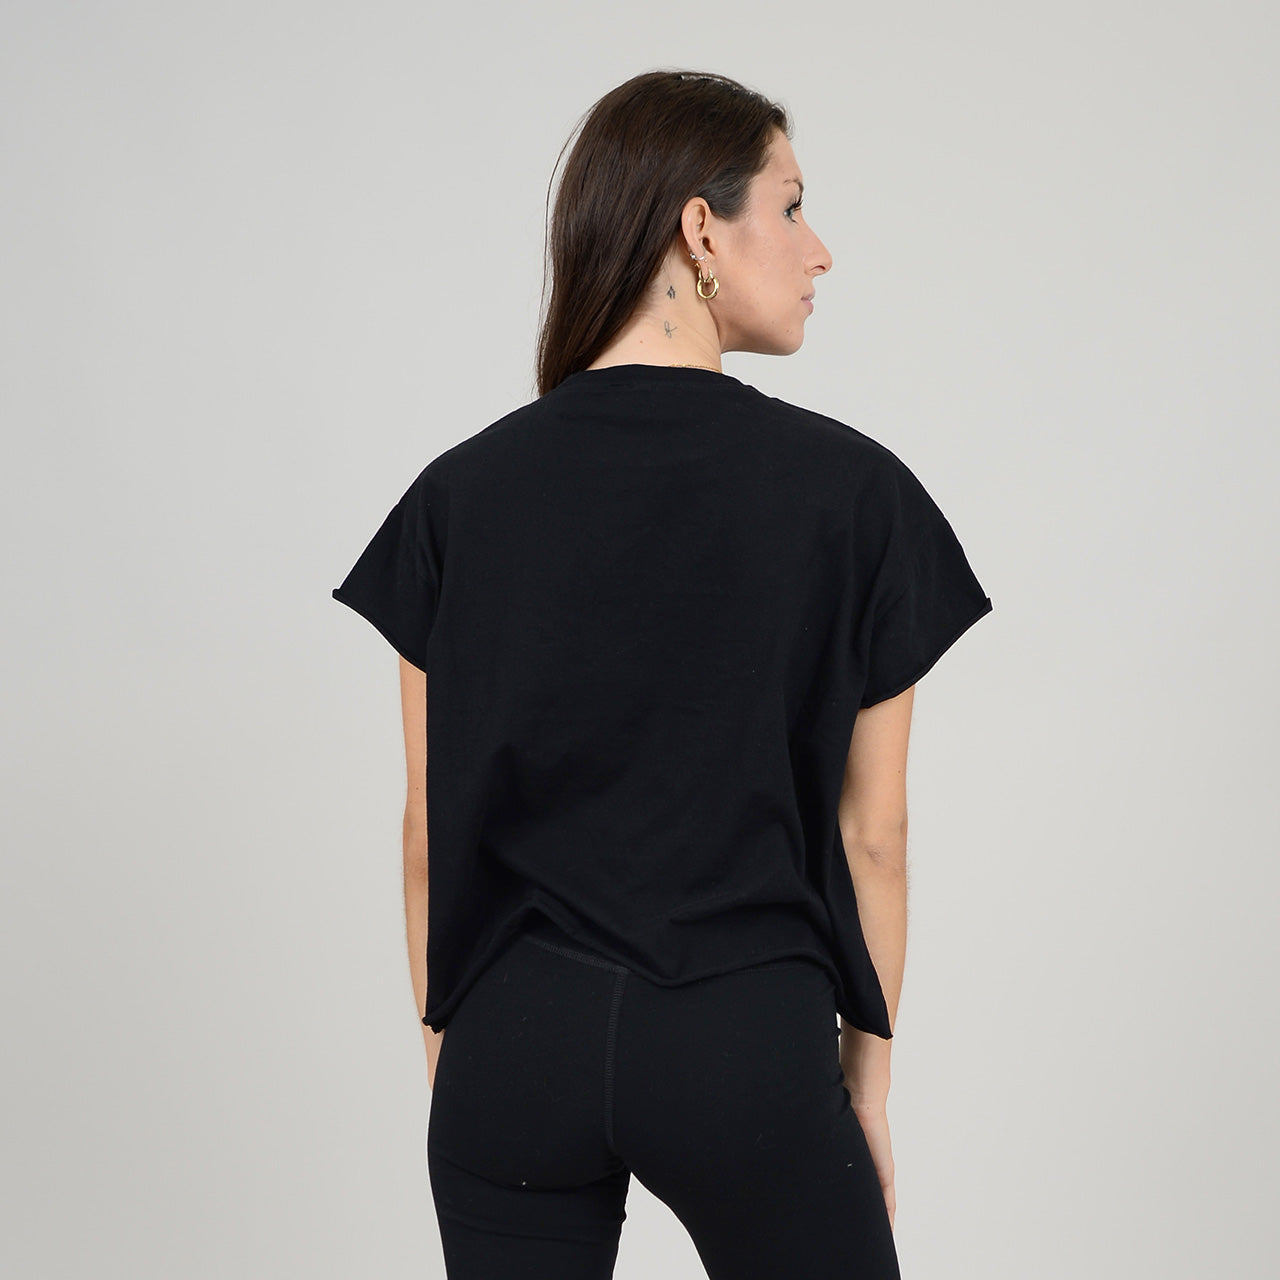 Tara T-Shirt, Black (last one)